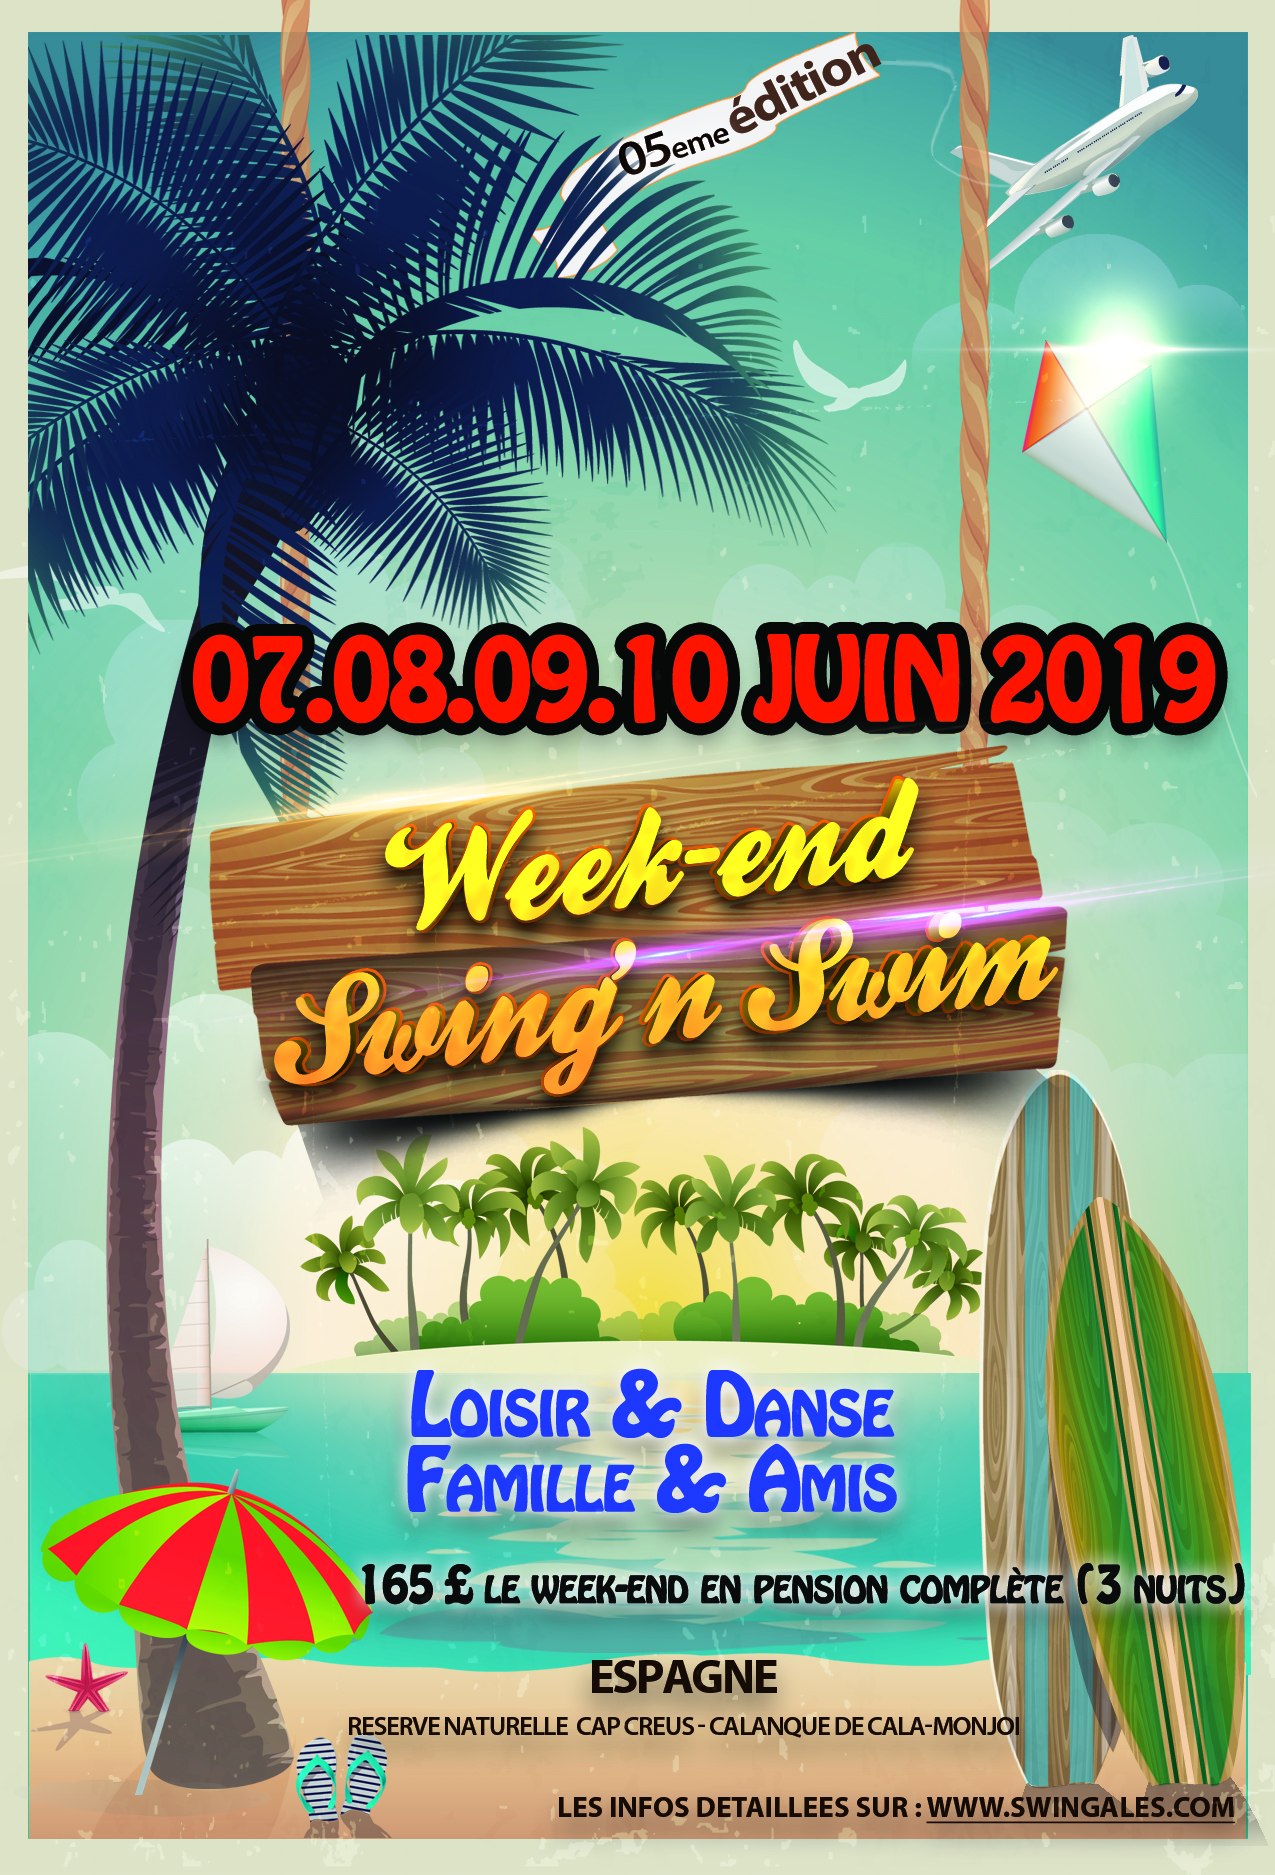 Week-end Swing'n Swim 5 eme édition - Spain -